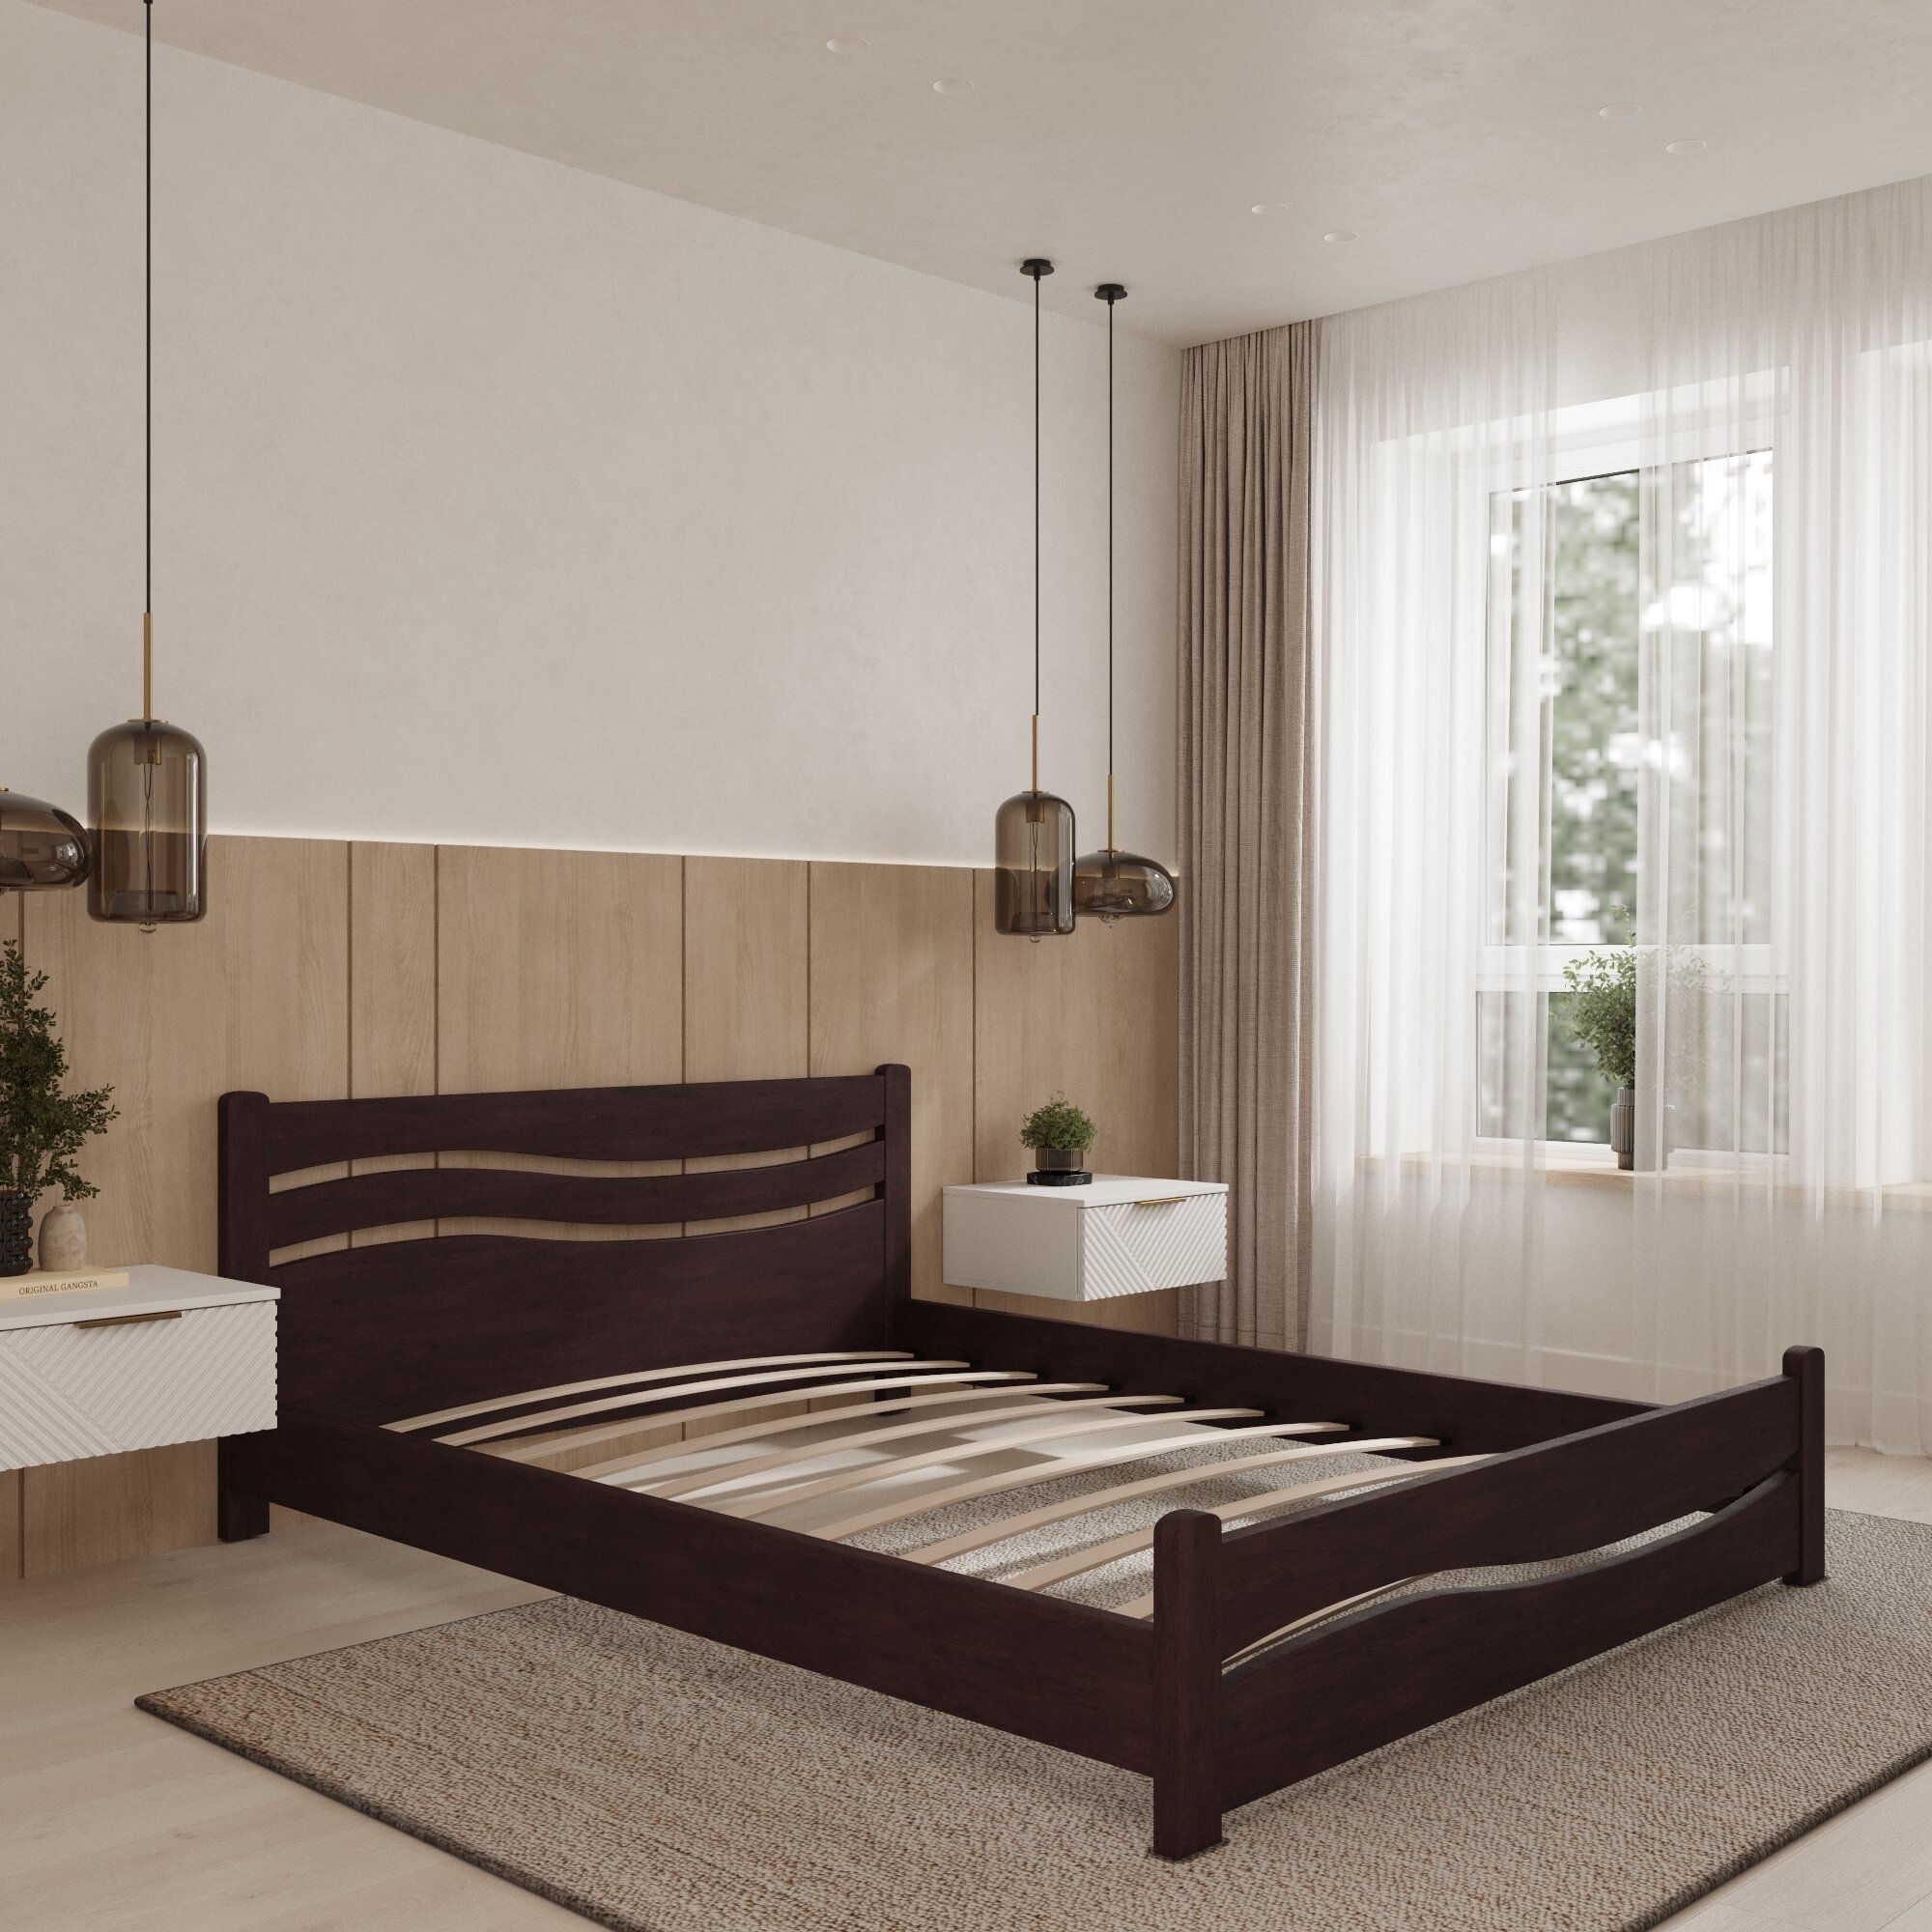 Двуспальная кровать Кровать деревянная Волна 120*200, 120х200 см, ММК-Древ